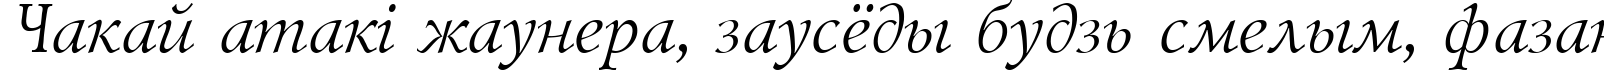 Пример написания шрифтом Lazursky Italic:001.001 текста на белорусском